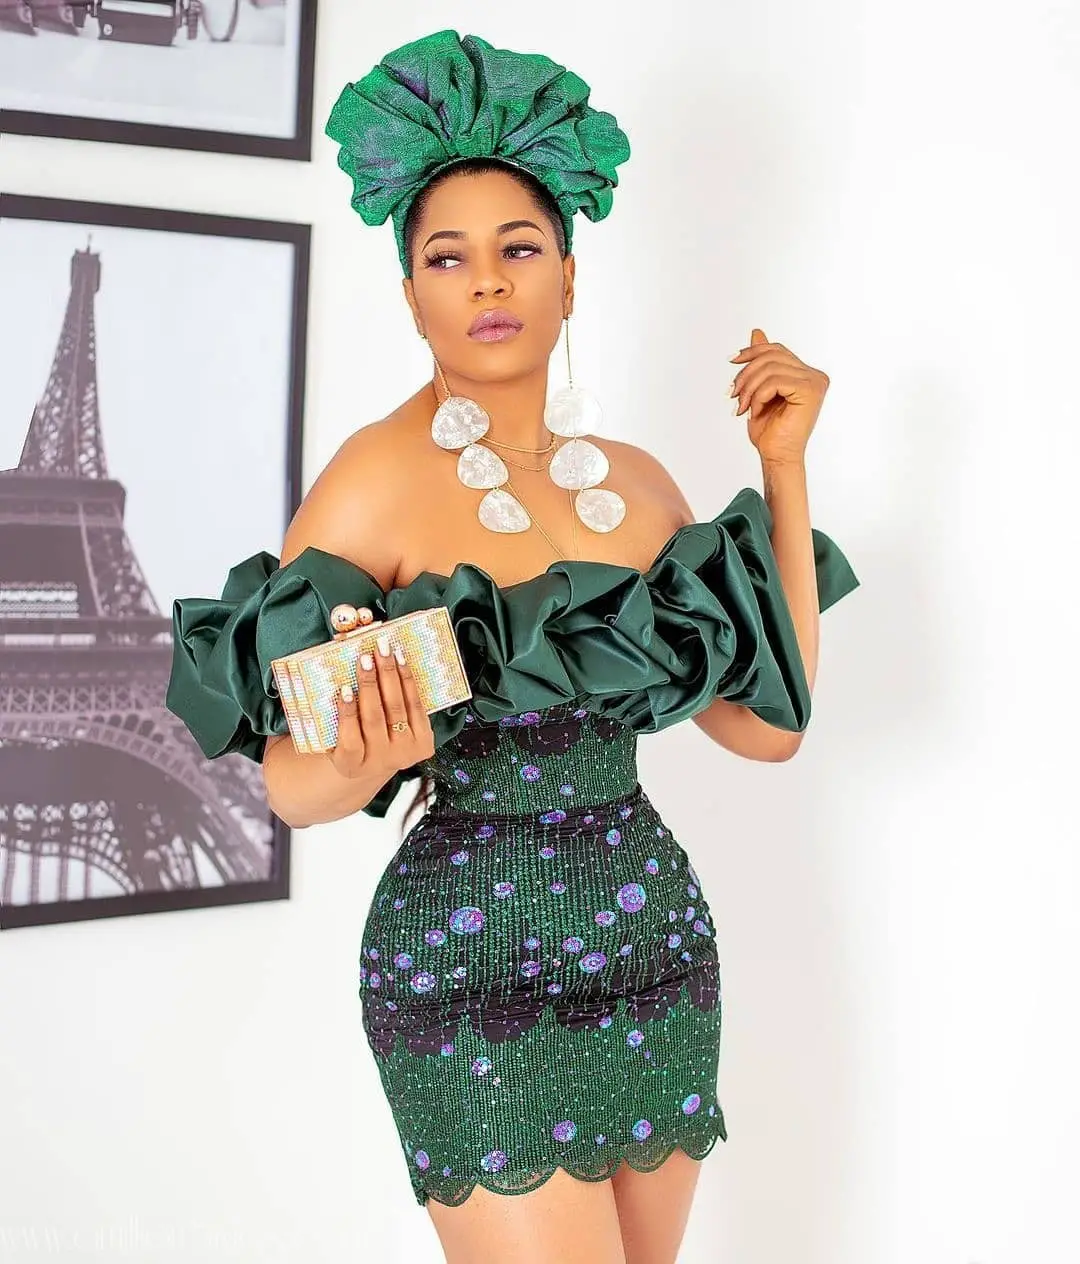 Exquisite Nigerian Lace Asoebi Styles-Volume 30